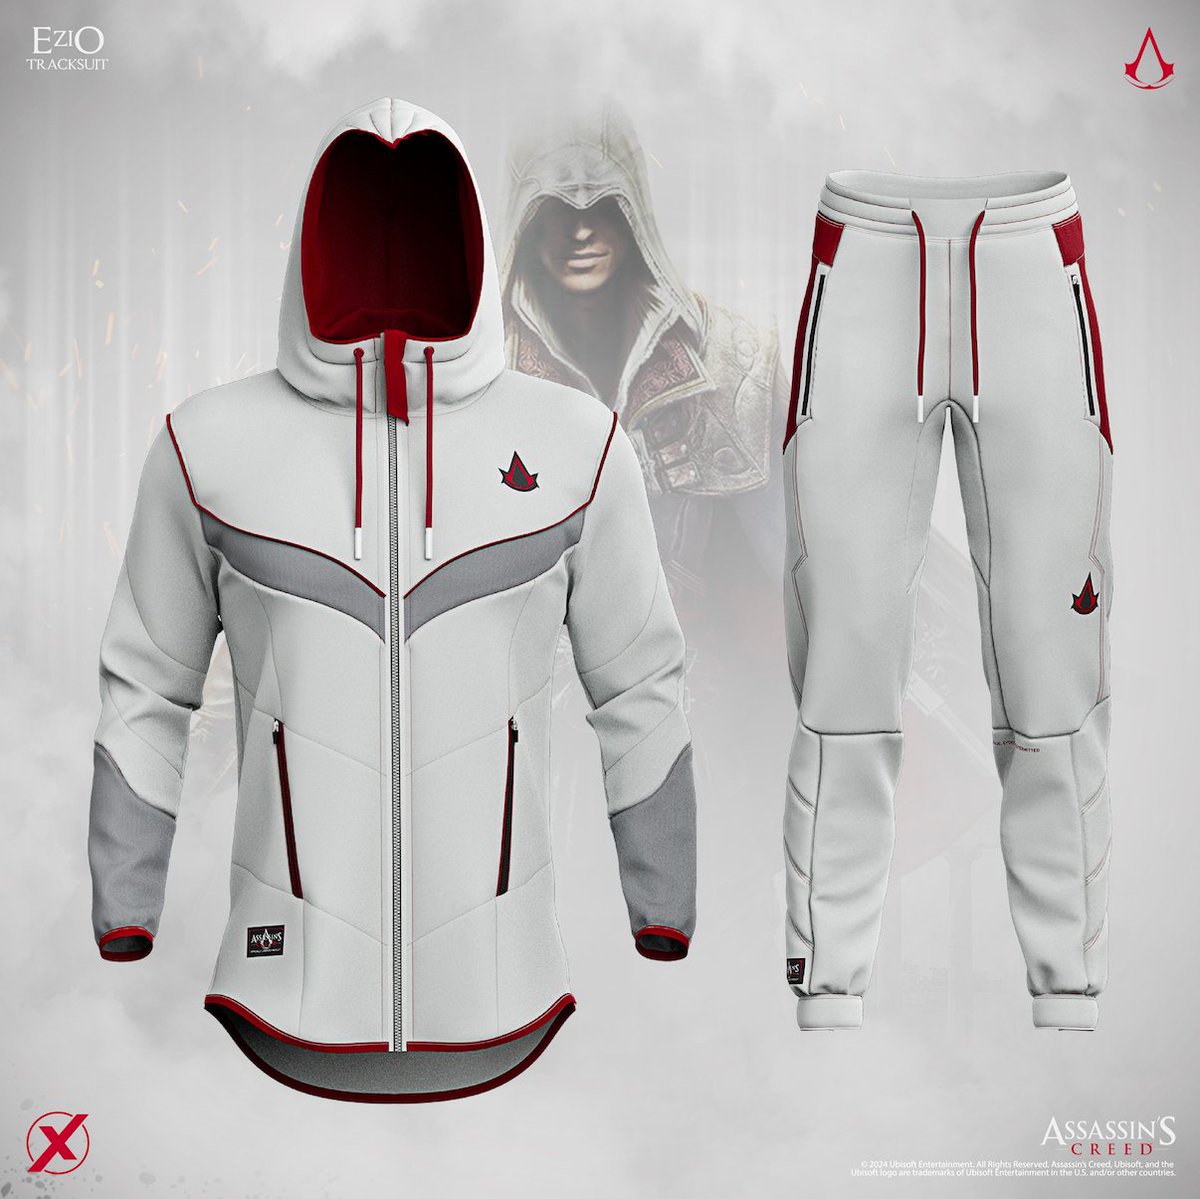 La tienda de ropa SUPERX y Ubisoft se unen para sacar la primera colección de ropa deportiva de Assassin's Creed inspirada en Ezio. Se espera para primavera de 2024, pero puedes obtener acceso anticipado al registrarte aquí: superx.co/pages/assassin…